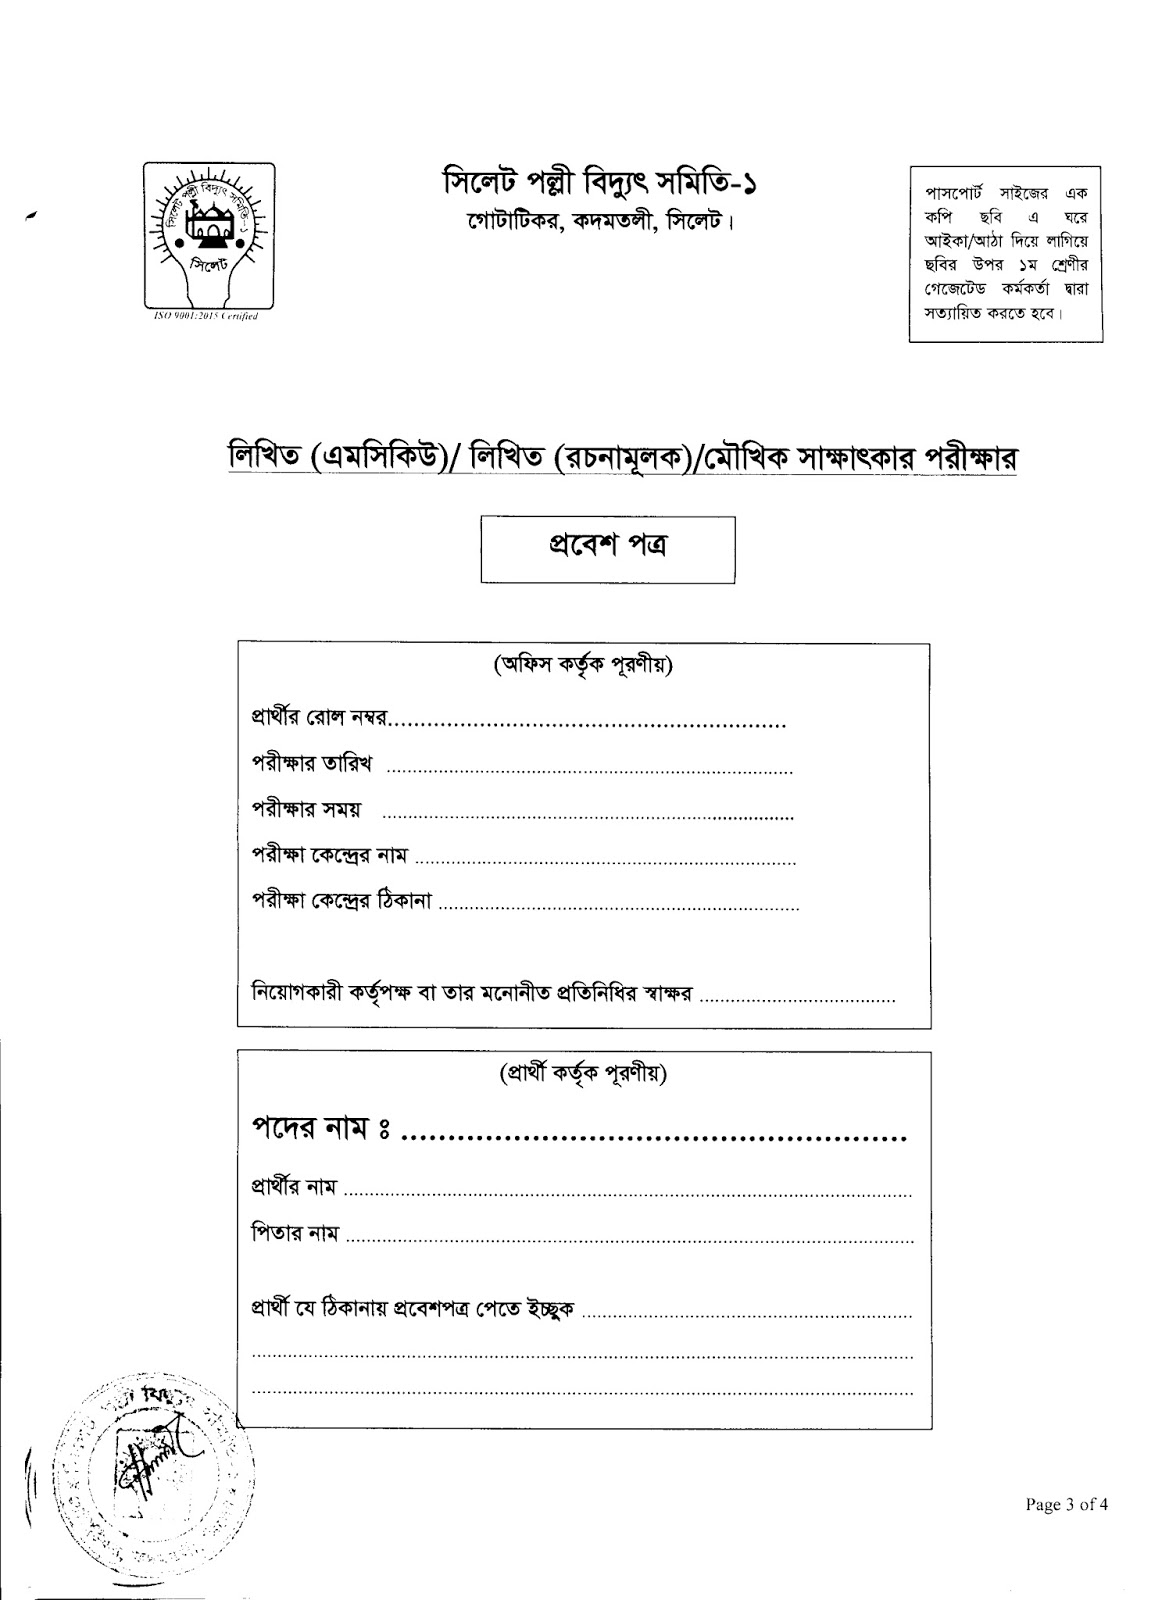 Sylhet Palli Bidyut Samity-1 Job Application Form